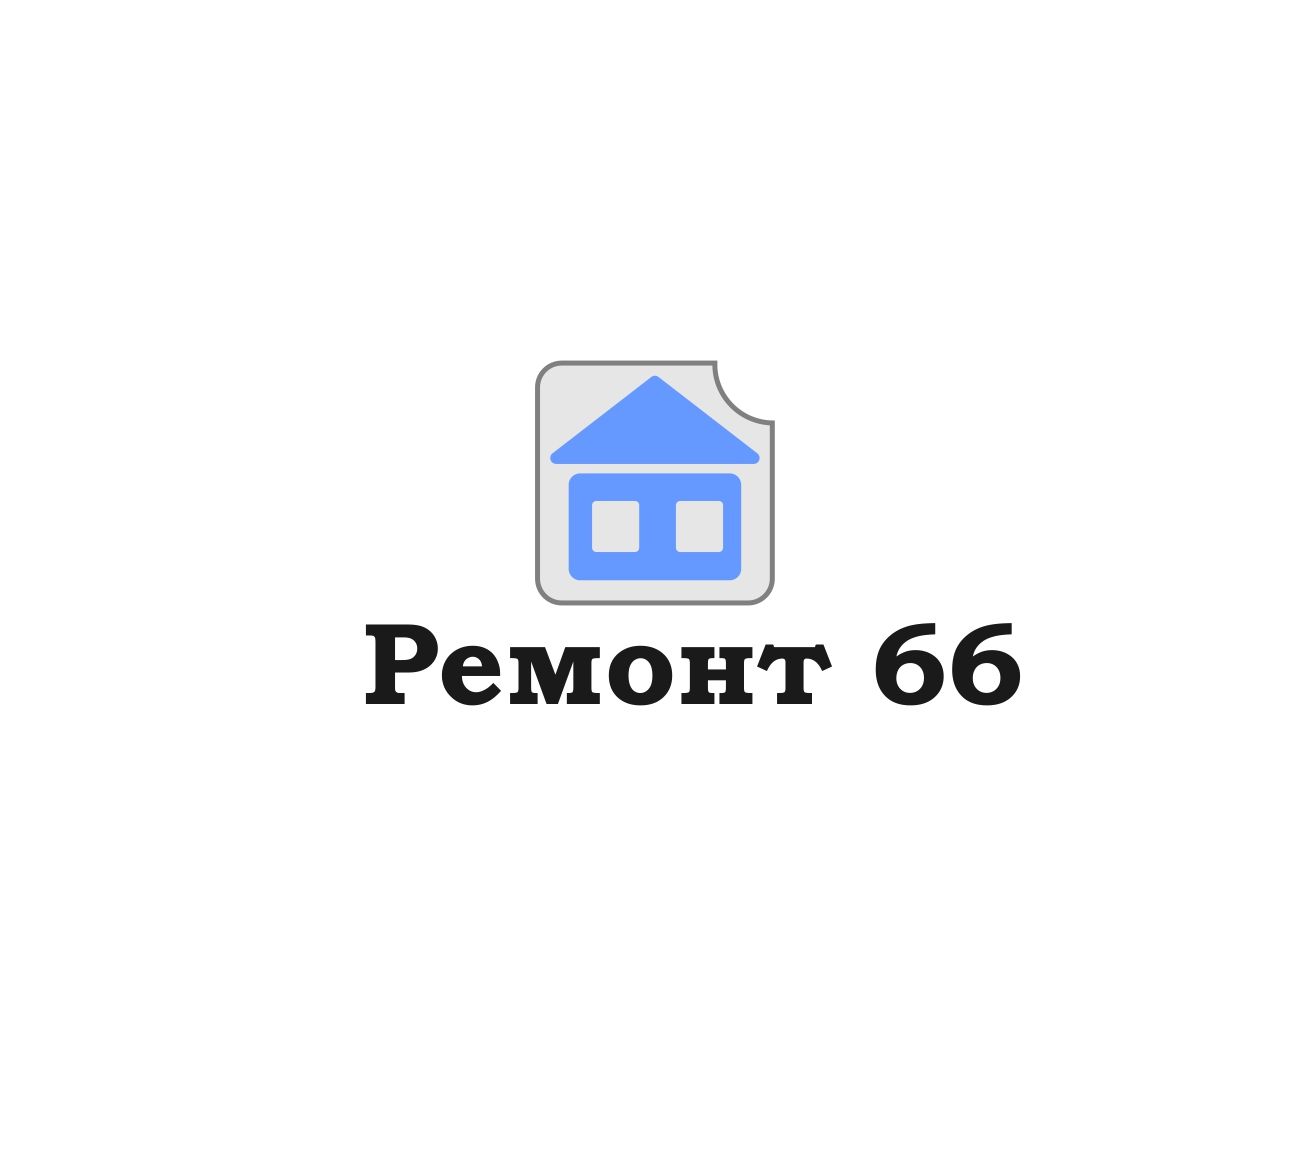 Ремонт 66 - дизайнер andreyshegurov